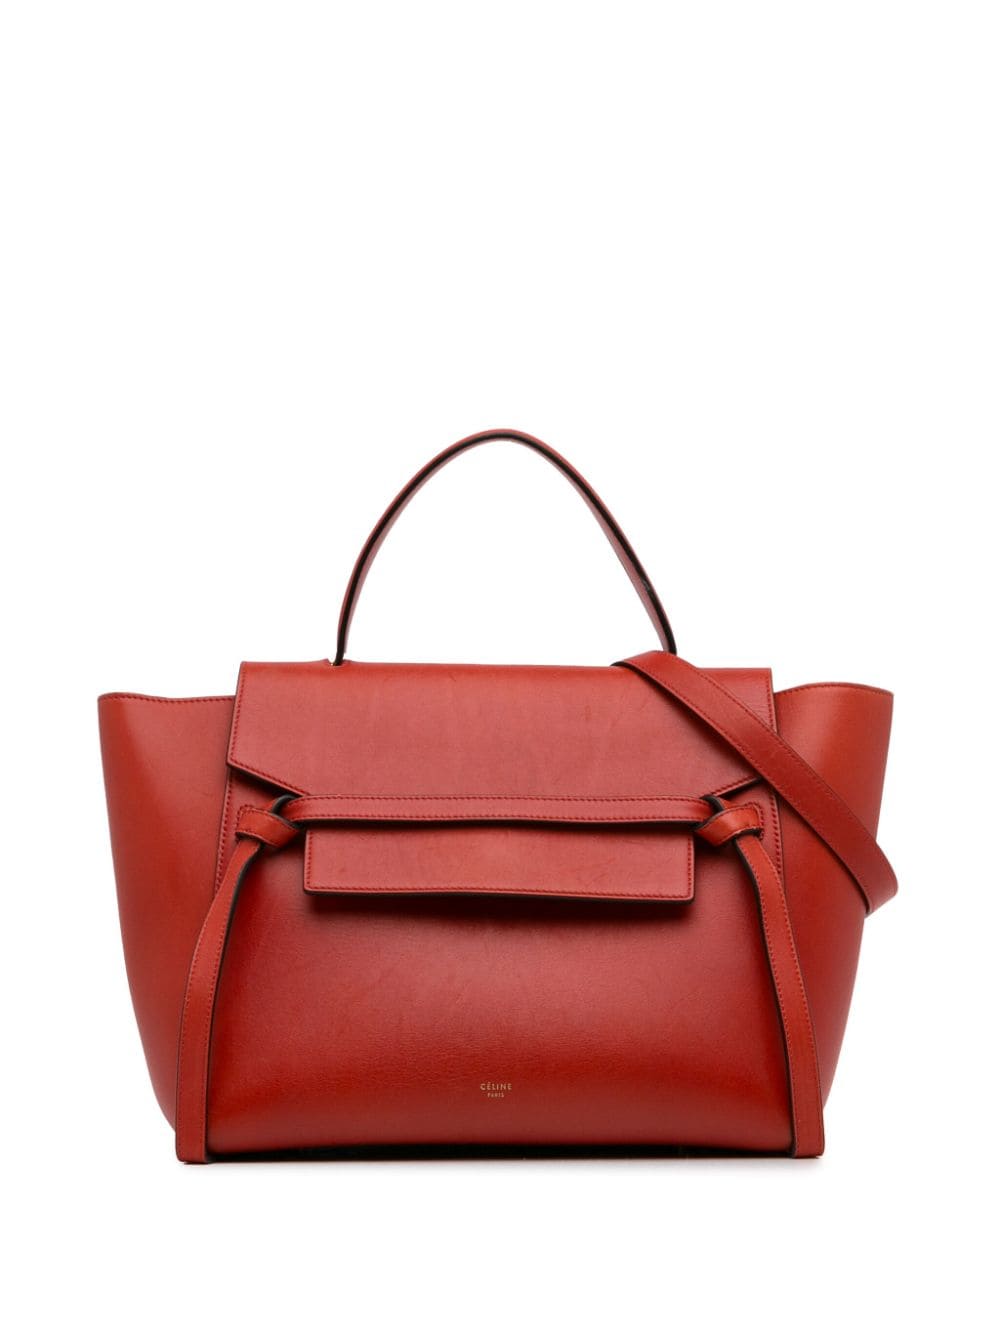 Céline Pre-Owned 2016 Mini Belt Bag satchel - Rosso